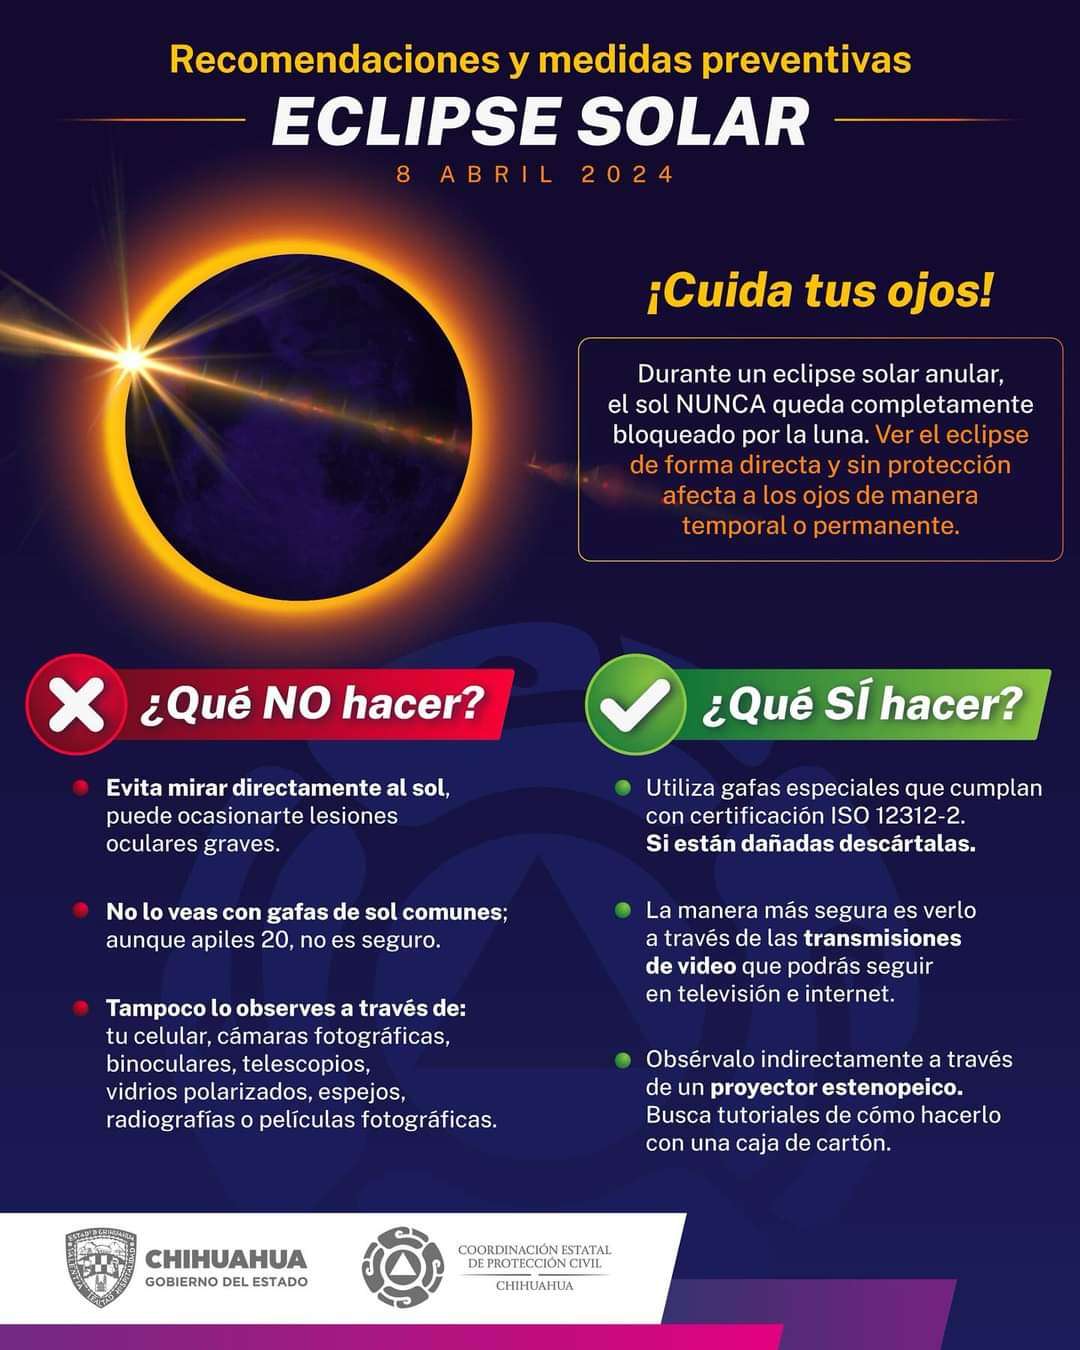 Emiten recomendaciones y medidas en este eclipse solar
